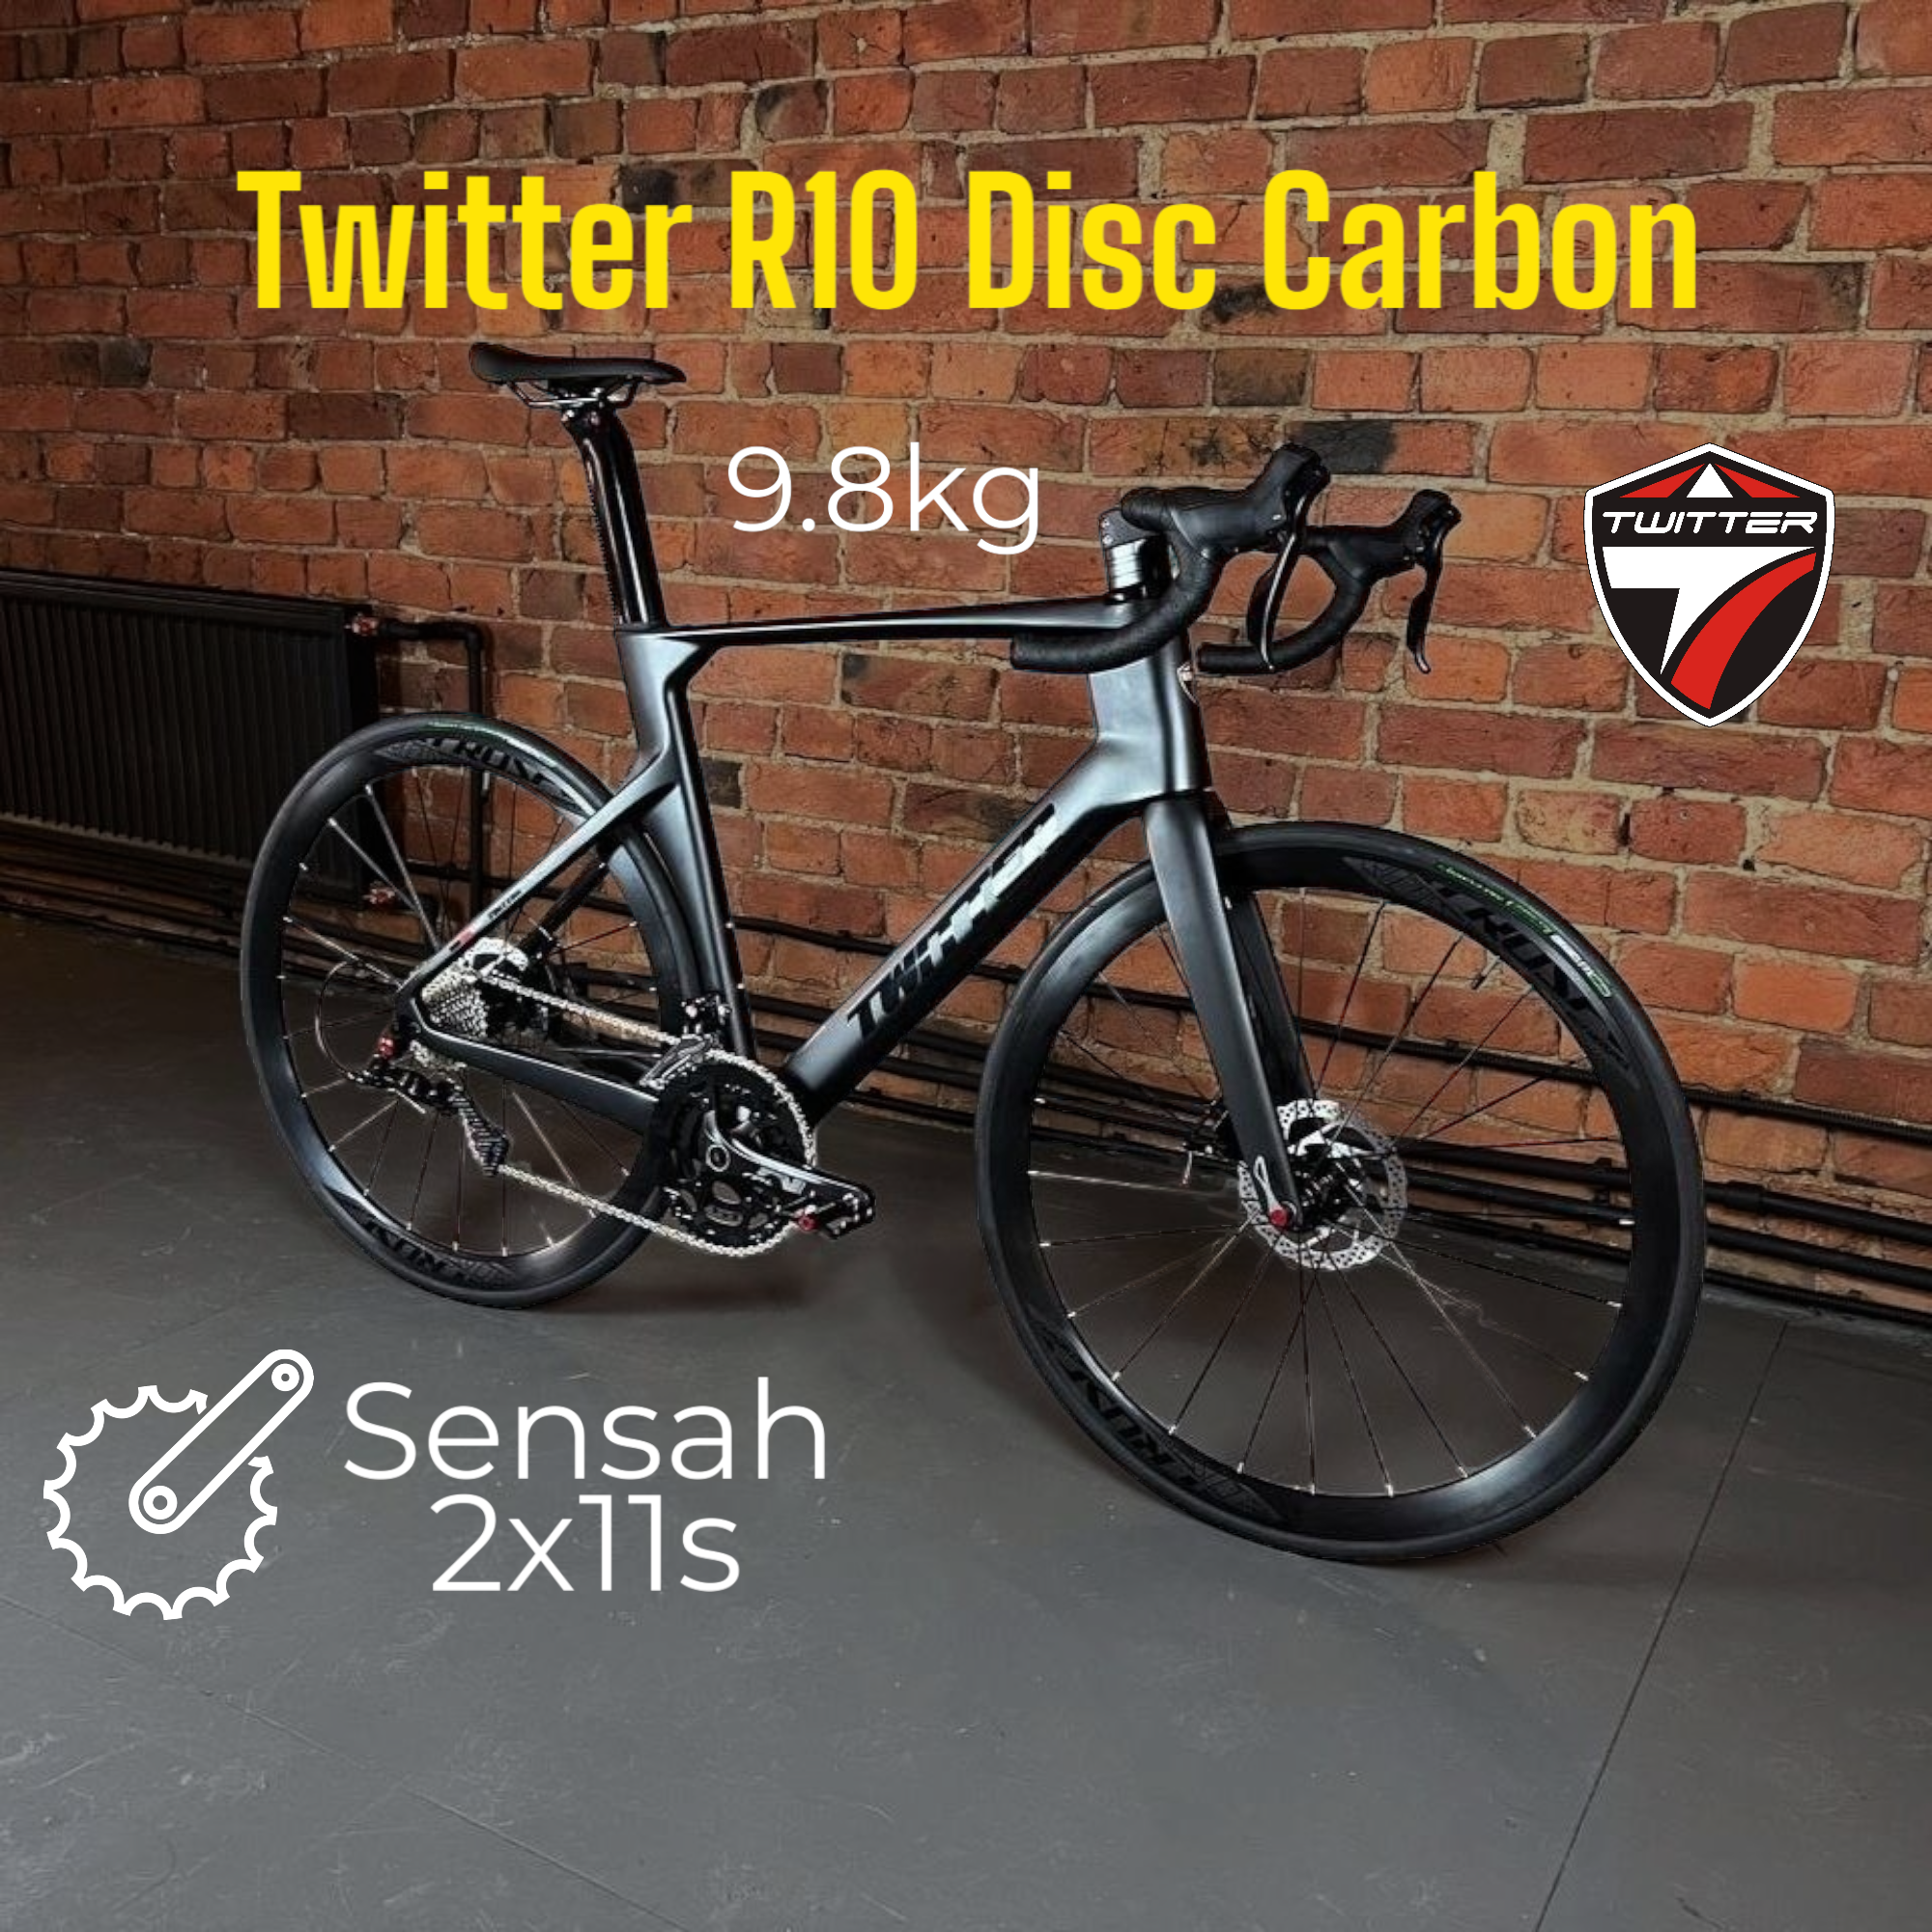 Велосипед Twitter R10 Carbon, 9.8 kg, 700х25с шоссейный взрослый, 54 см 22 скорости, цвет черный